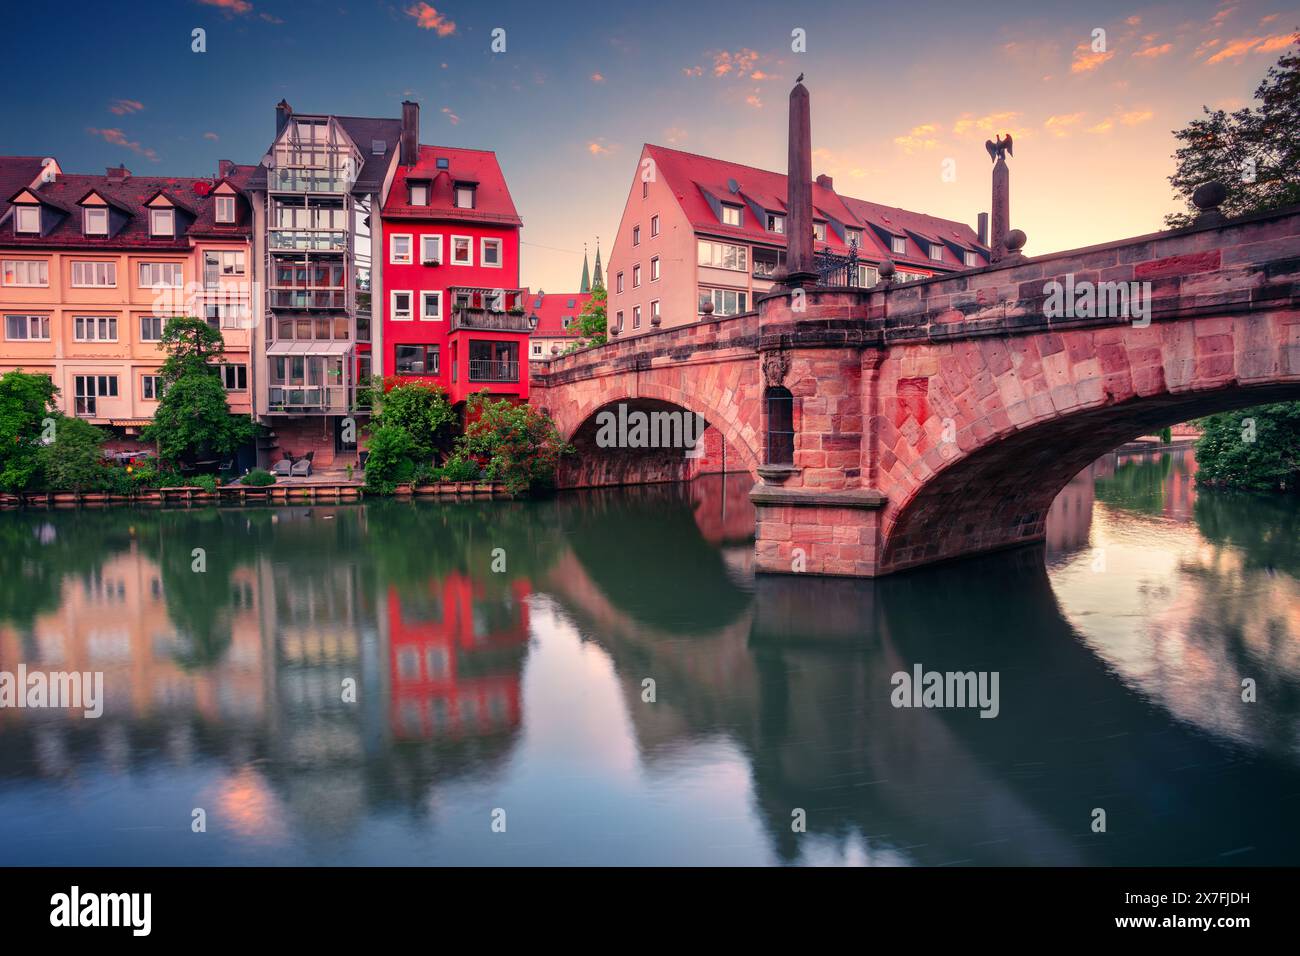 Norimberga, Germania. Immagine della città vecchia di Norimberga, Germania all'alba della primavera. Foto Stock